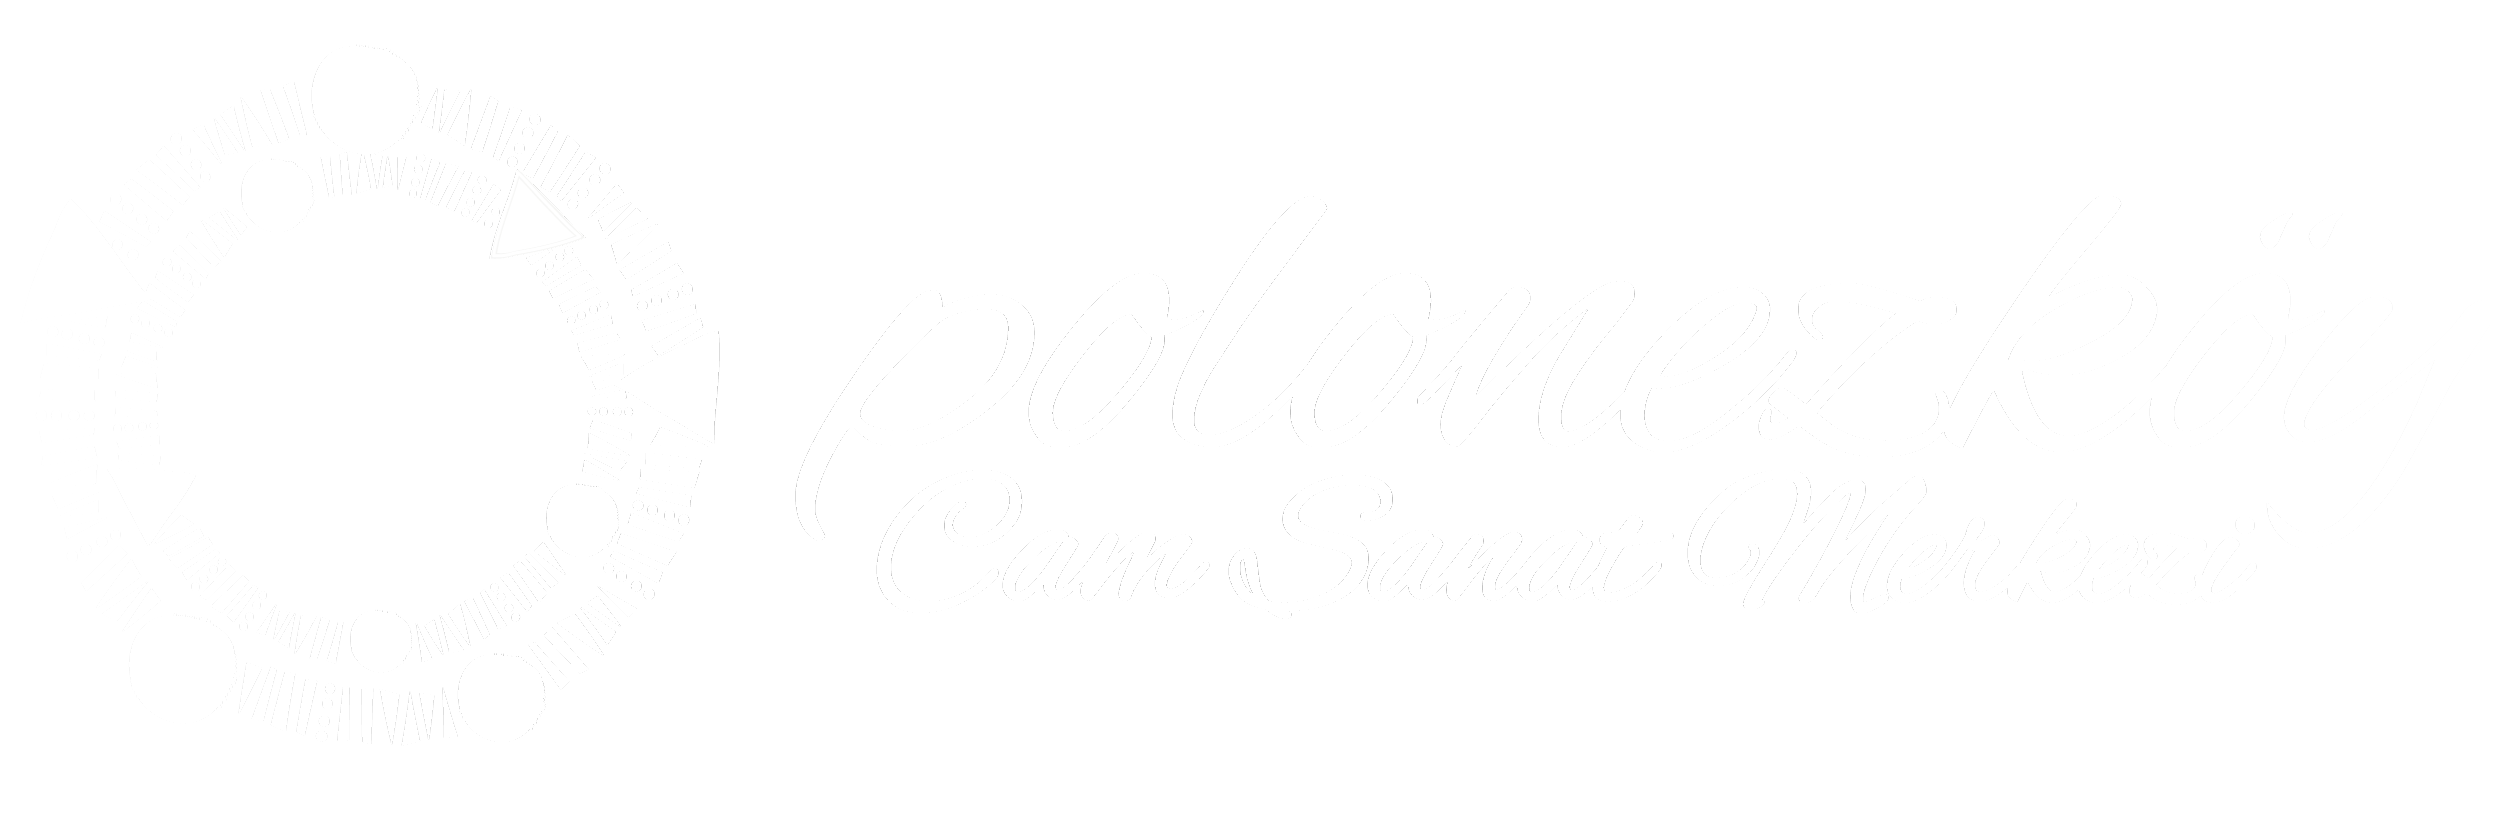 polonezköy cam sanat merkezi logo beyaz